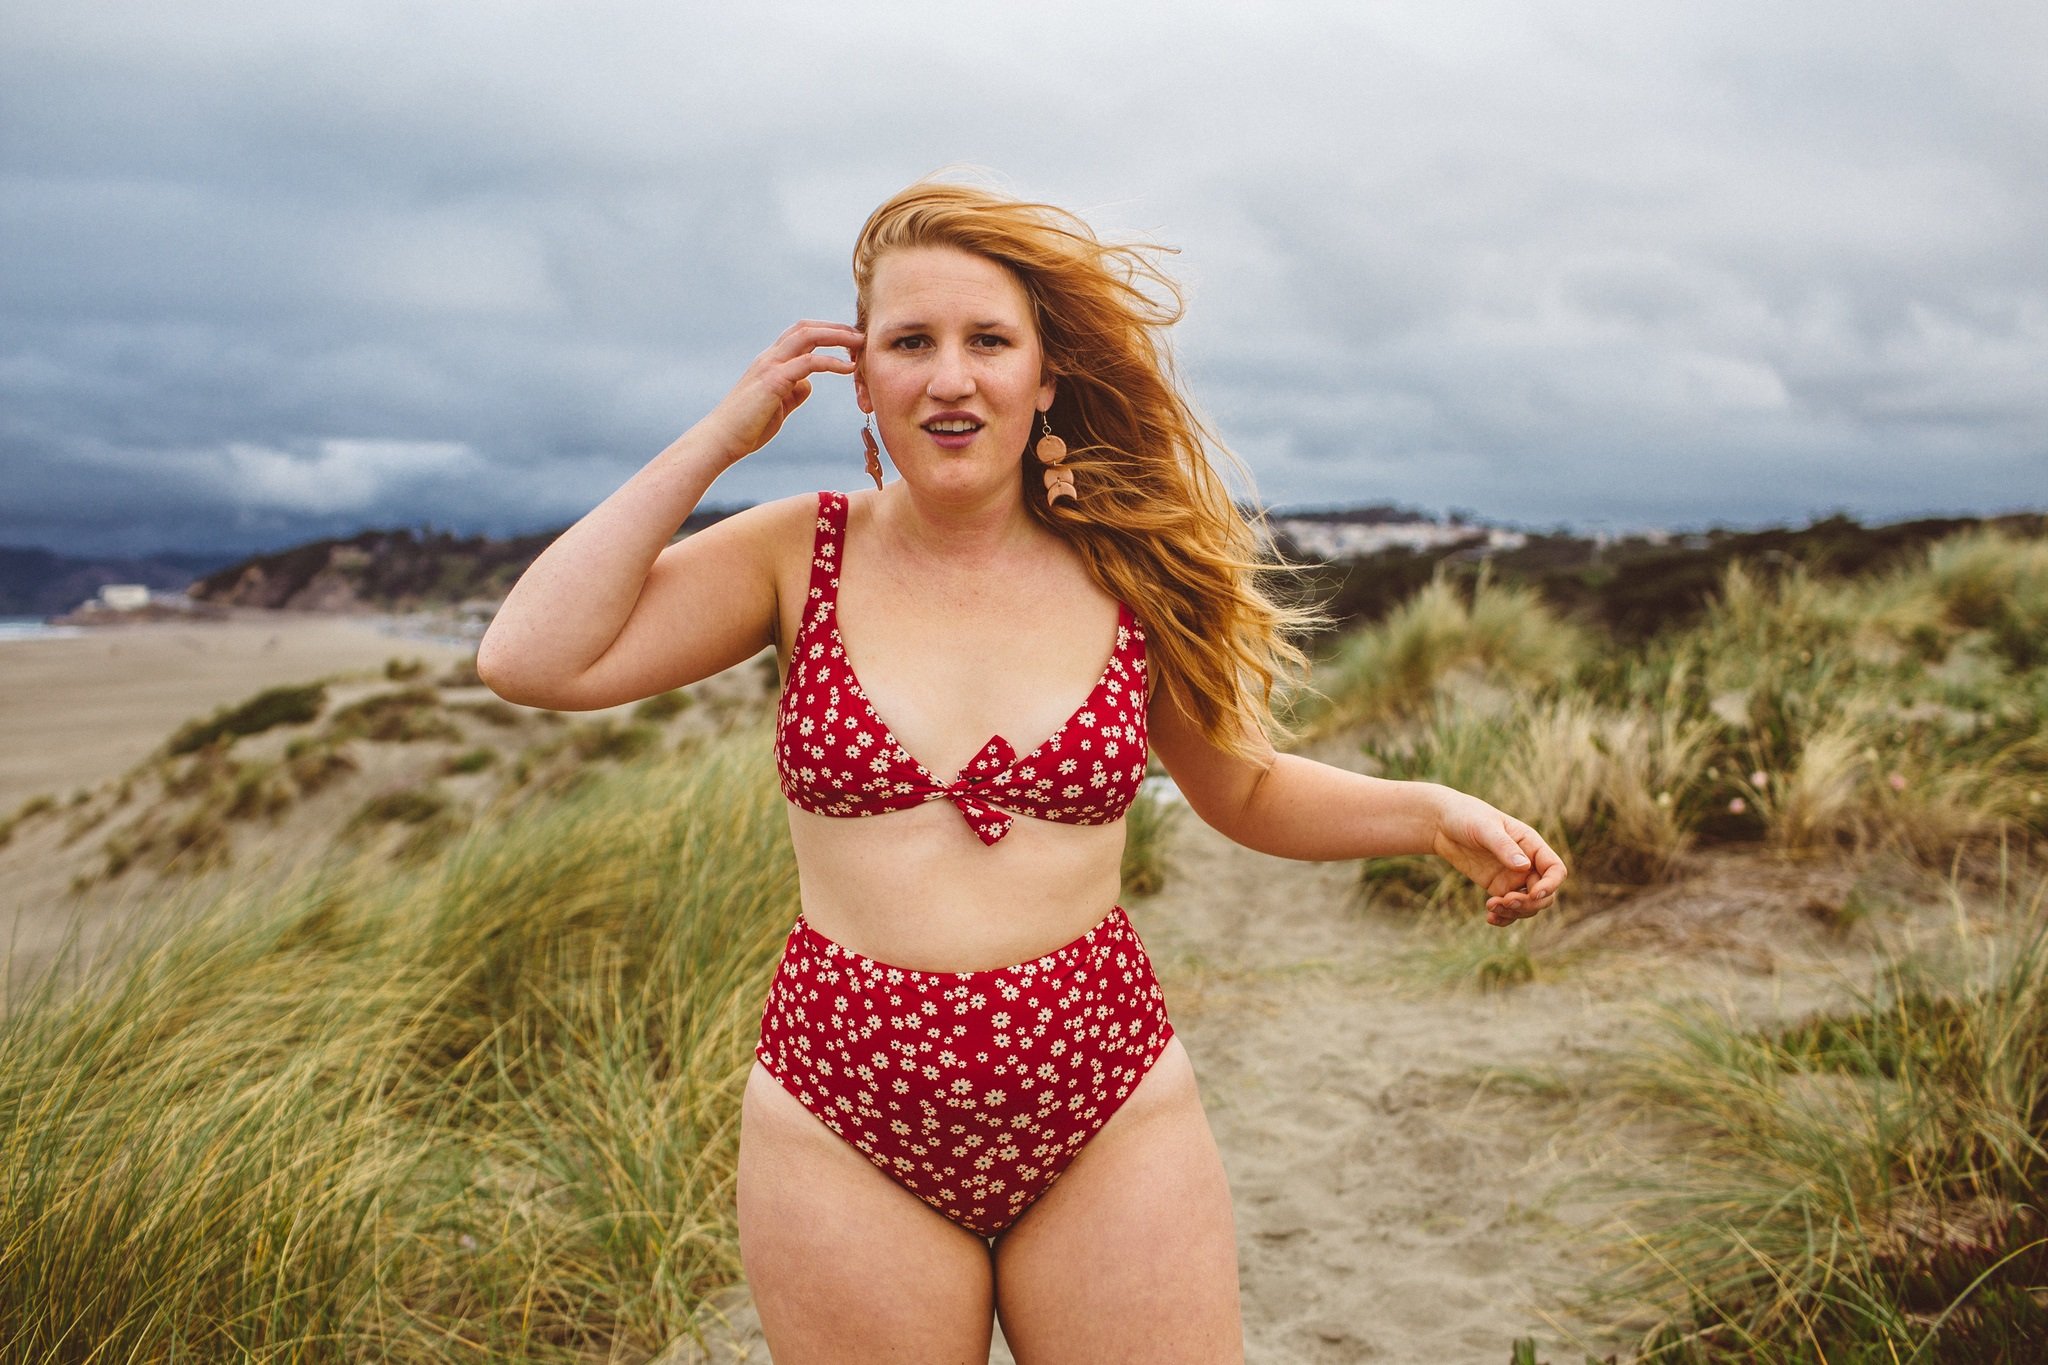 Massakre Begrænsninger træk vejret 71+ Swimsuits For Curvy Women That'll Make You Feel Confident AF